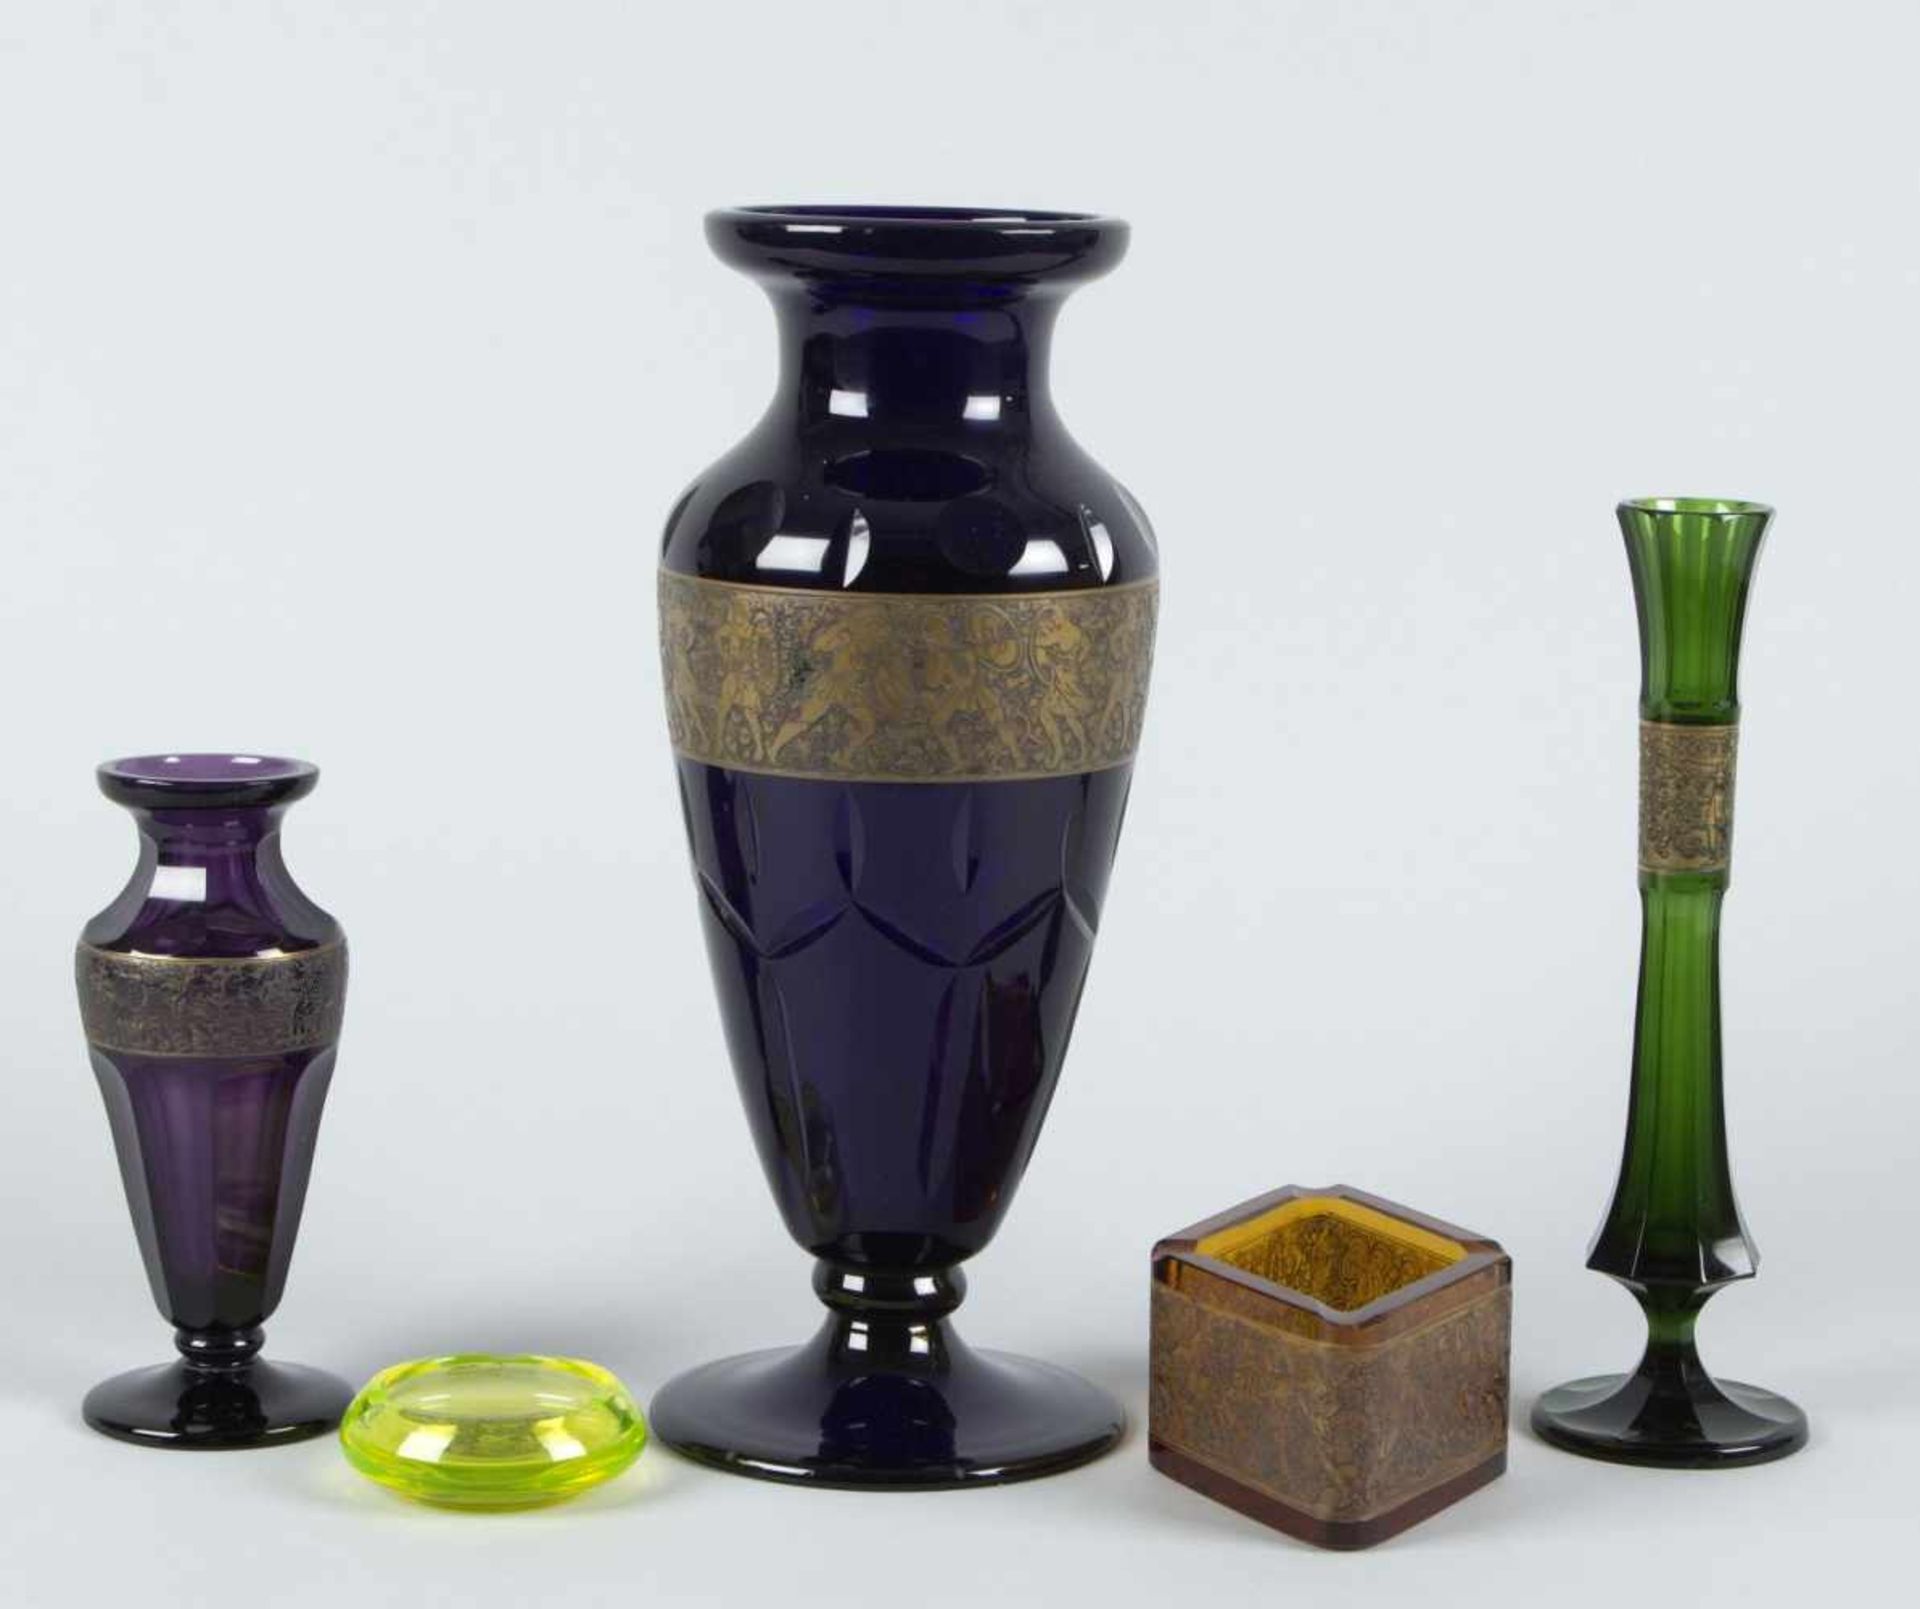 Große Vase, 2 kleine Vasen, Schale und kleiner AscherAmethyst- bzw. bernstein- bzw. uranfarbenes